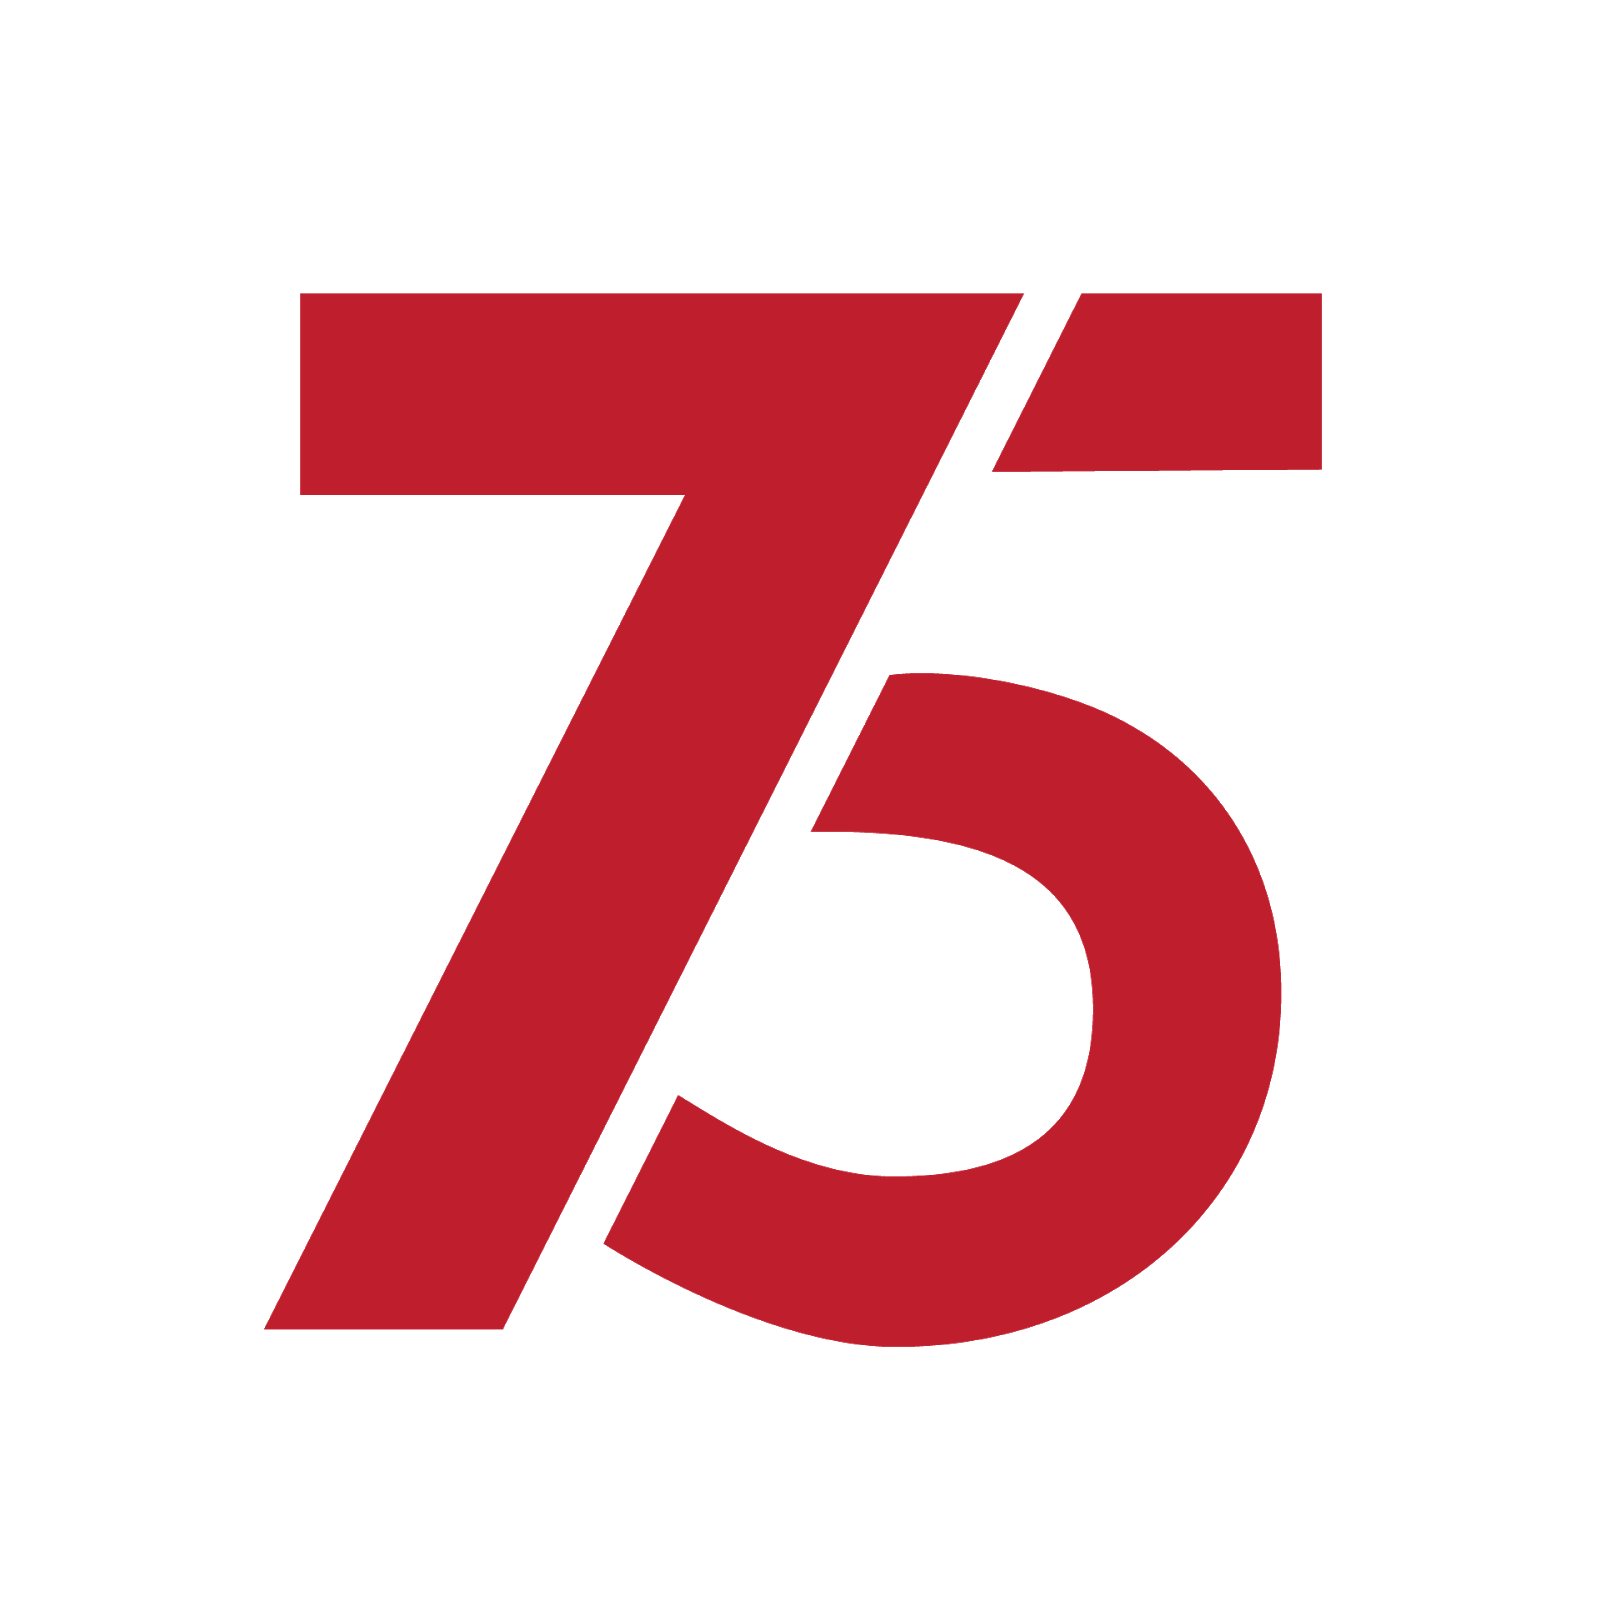 Logo Resmi Hut Ri Ke 75 Png - Download Kumpulan Gambar